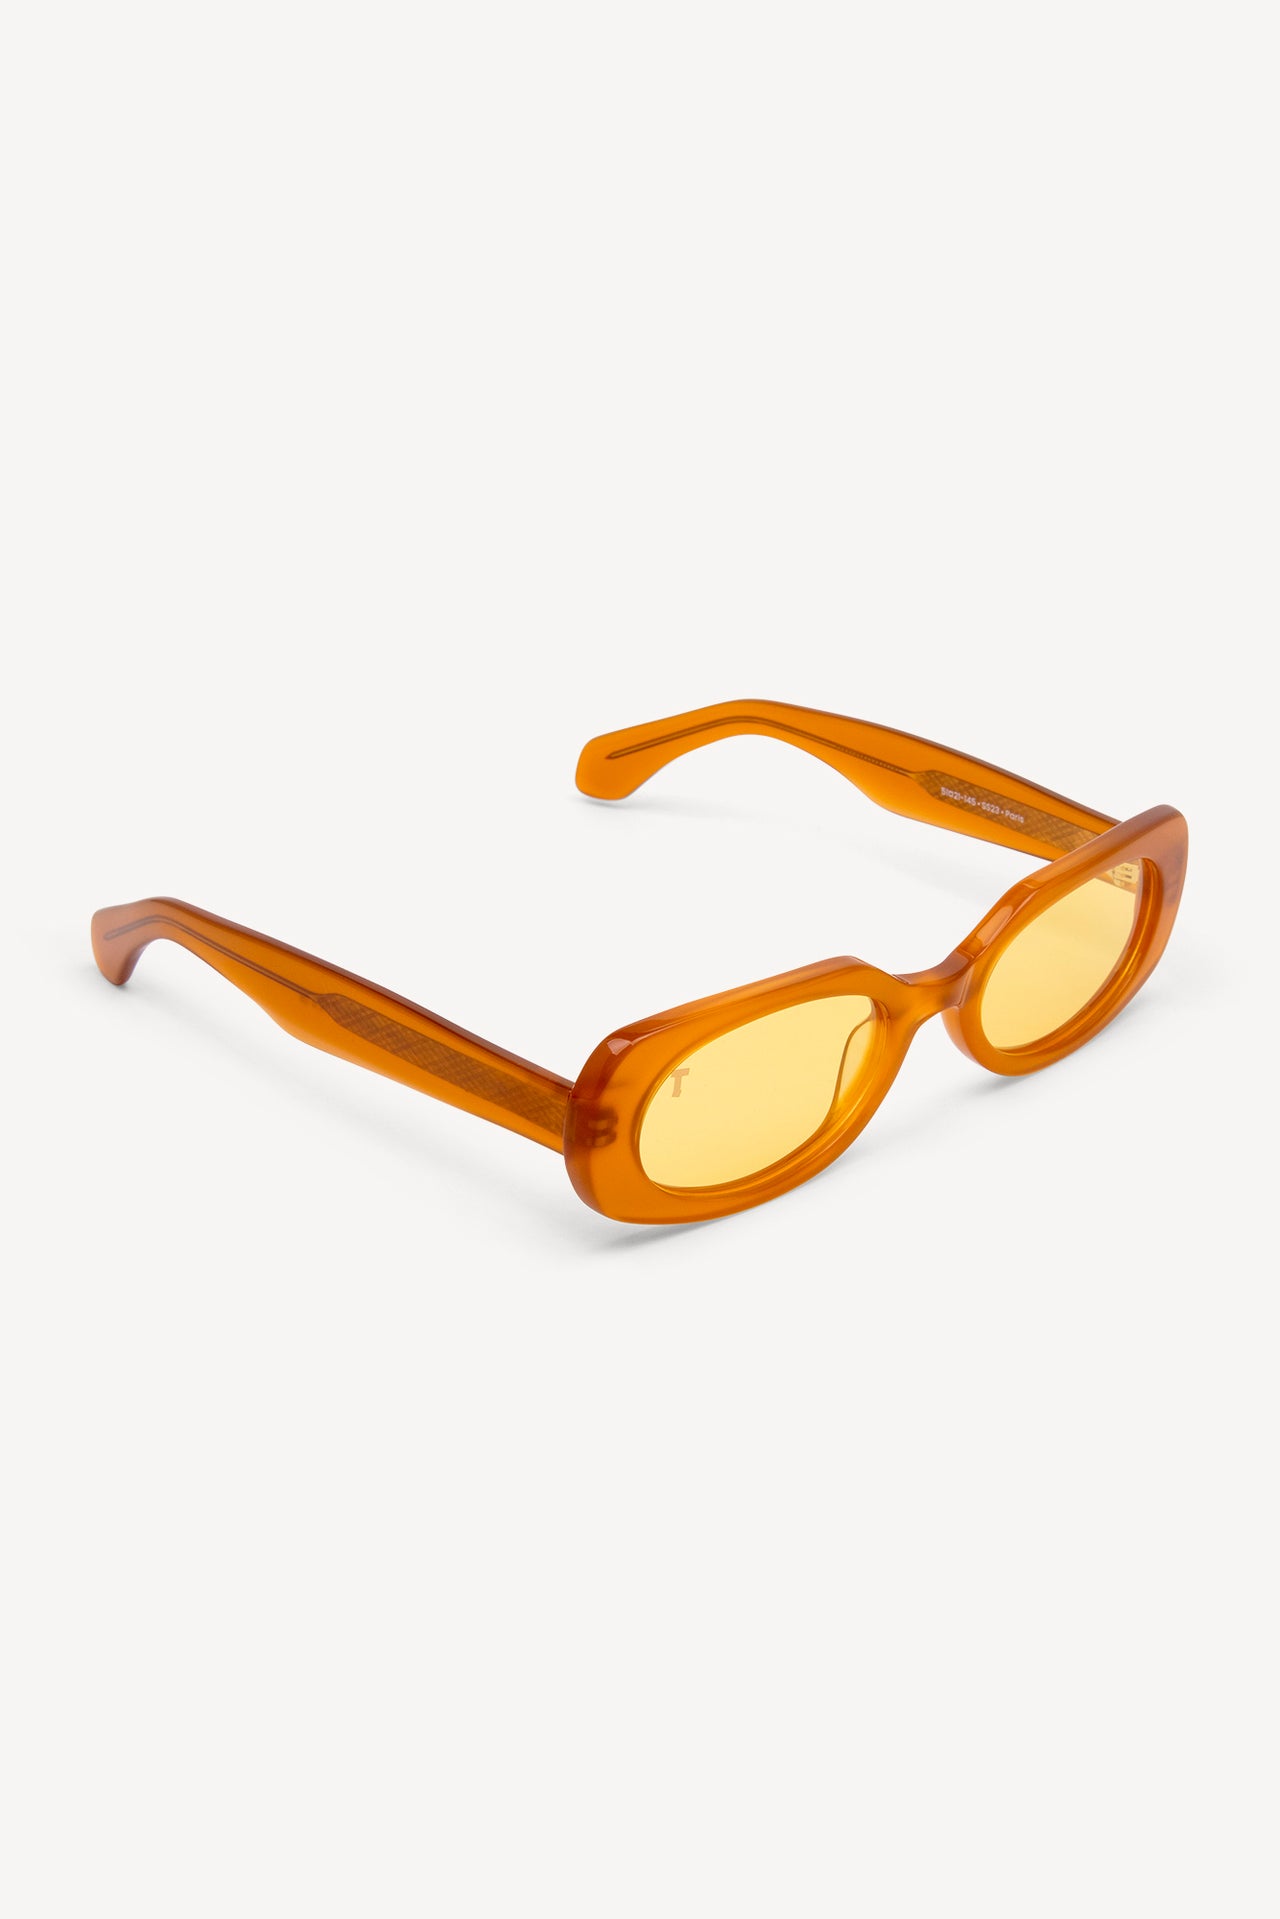 TOATIE Paris Rectangular Sunglasses ORANGE/YELLOW